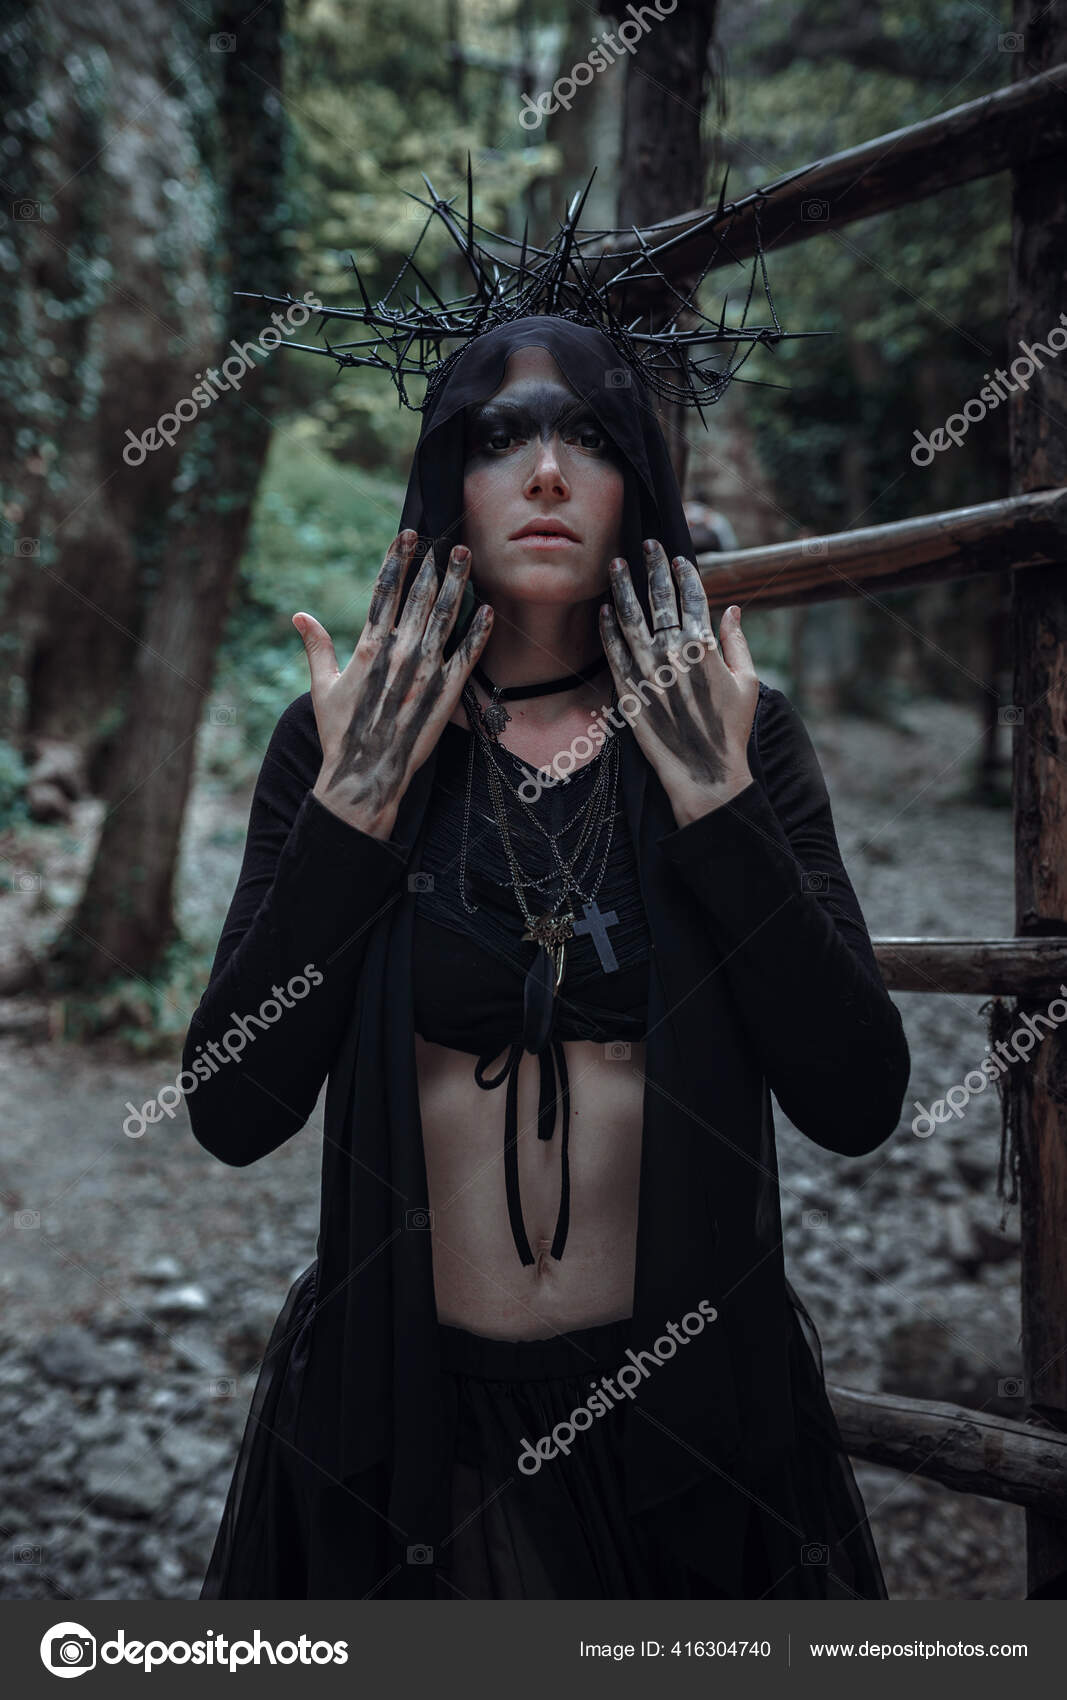 https://st4.depositphotos.com/3236119/41630/i/1600/depositphotos_416304740-stock-photo-mysterious-sorceress-woman-witch-beautiful.jpg